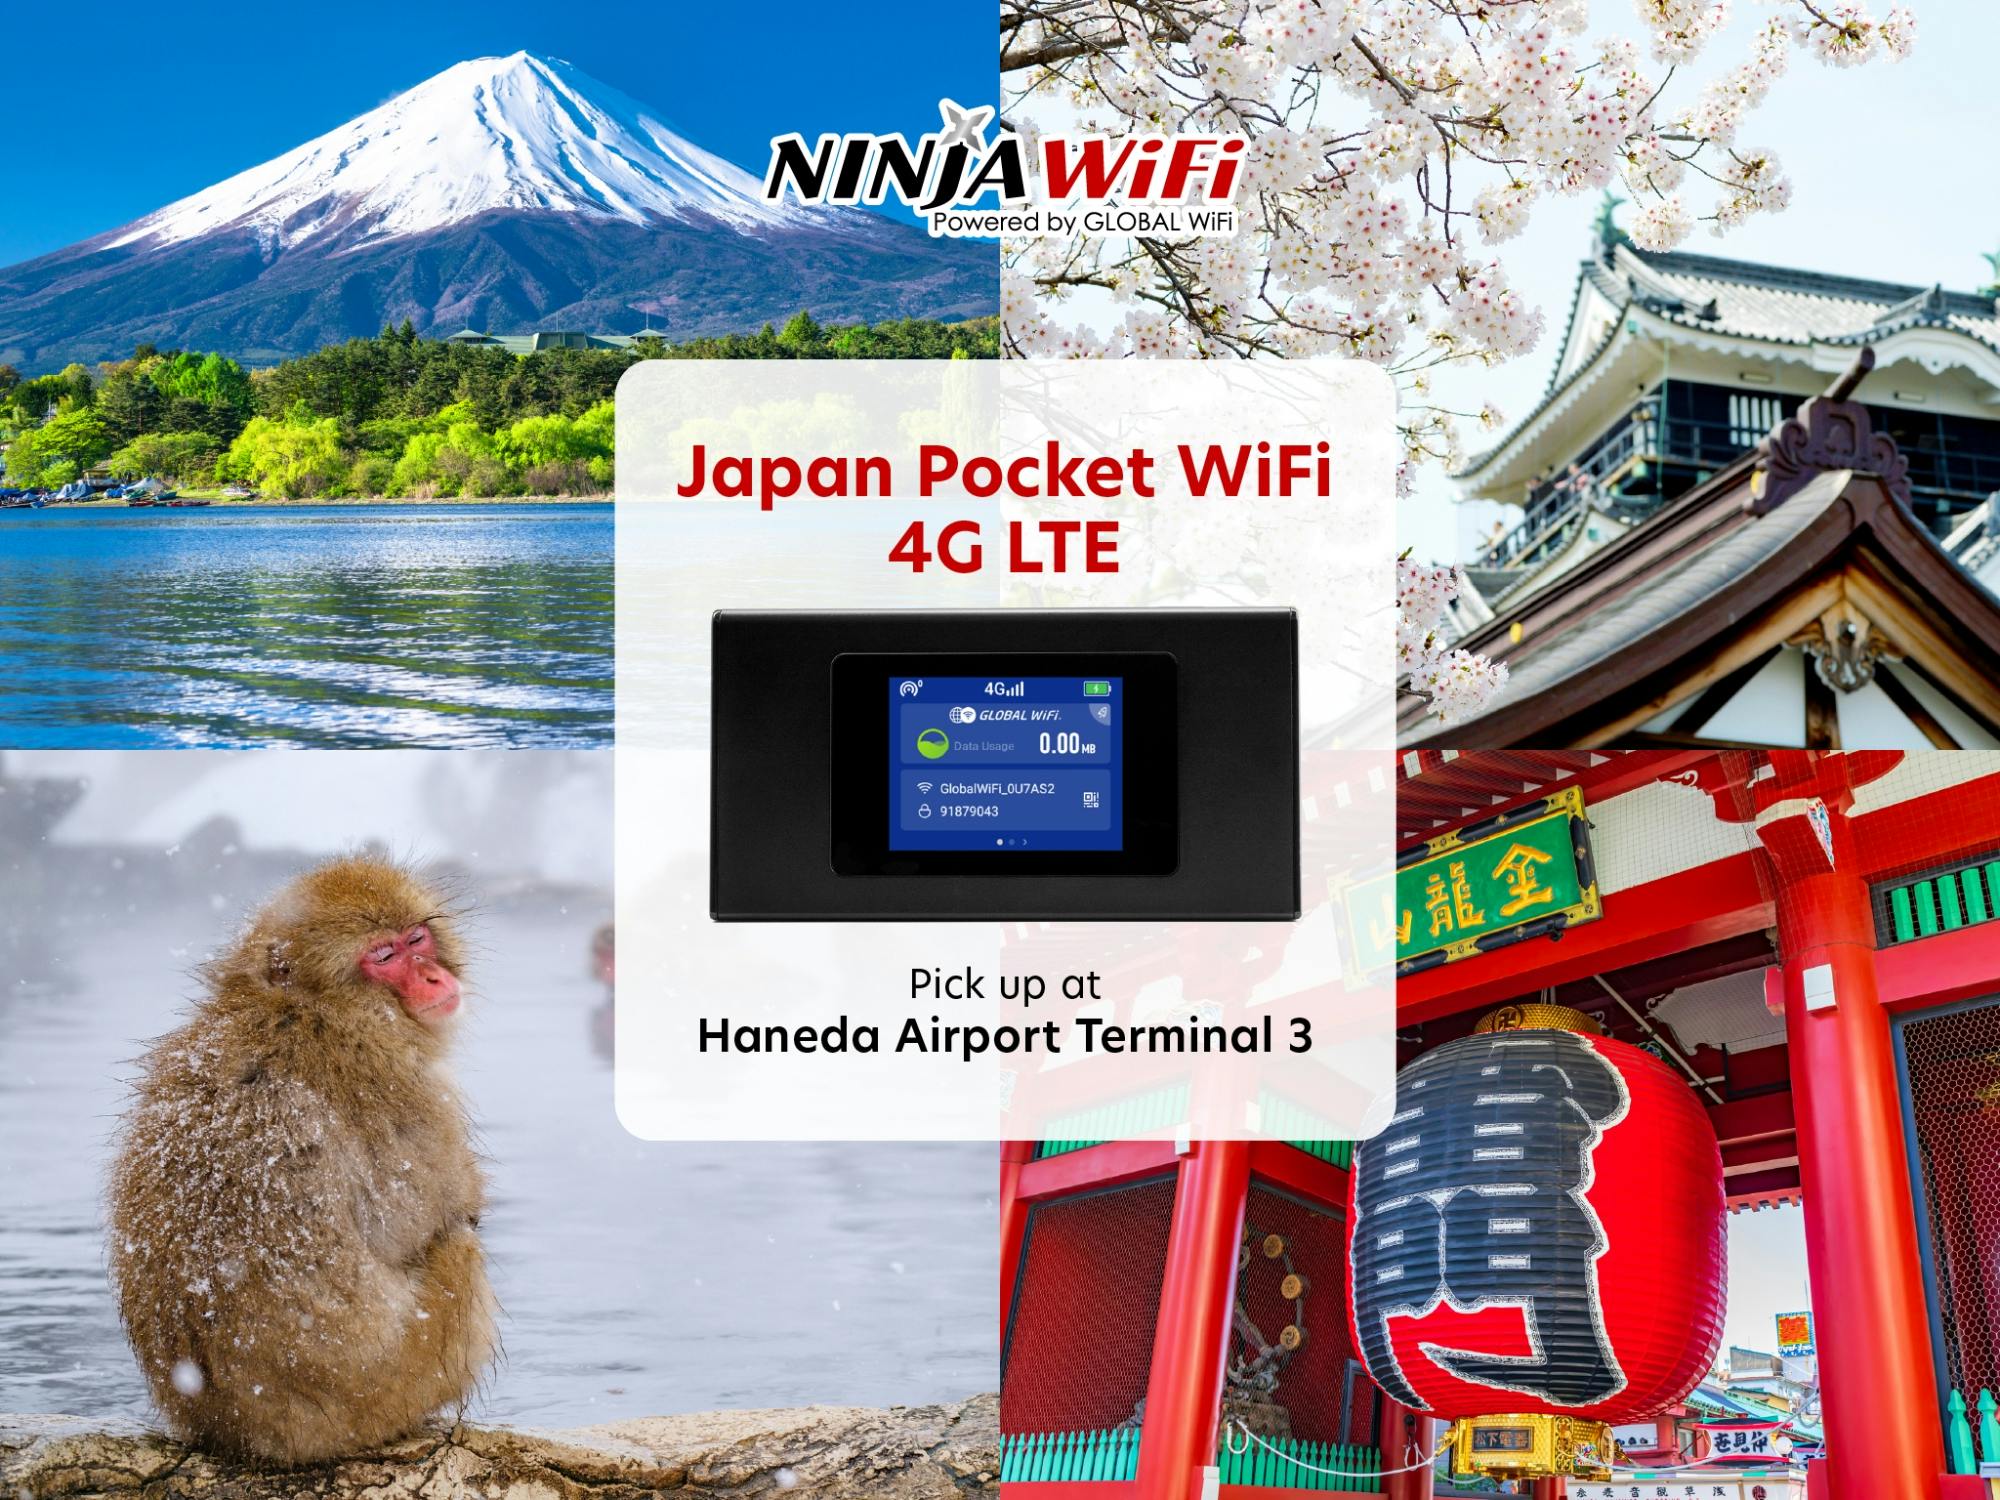 Pocket Wi Fi rental at Haneda Airport Terminal 3 Musement